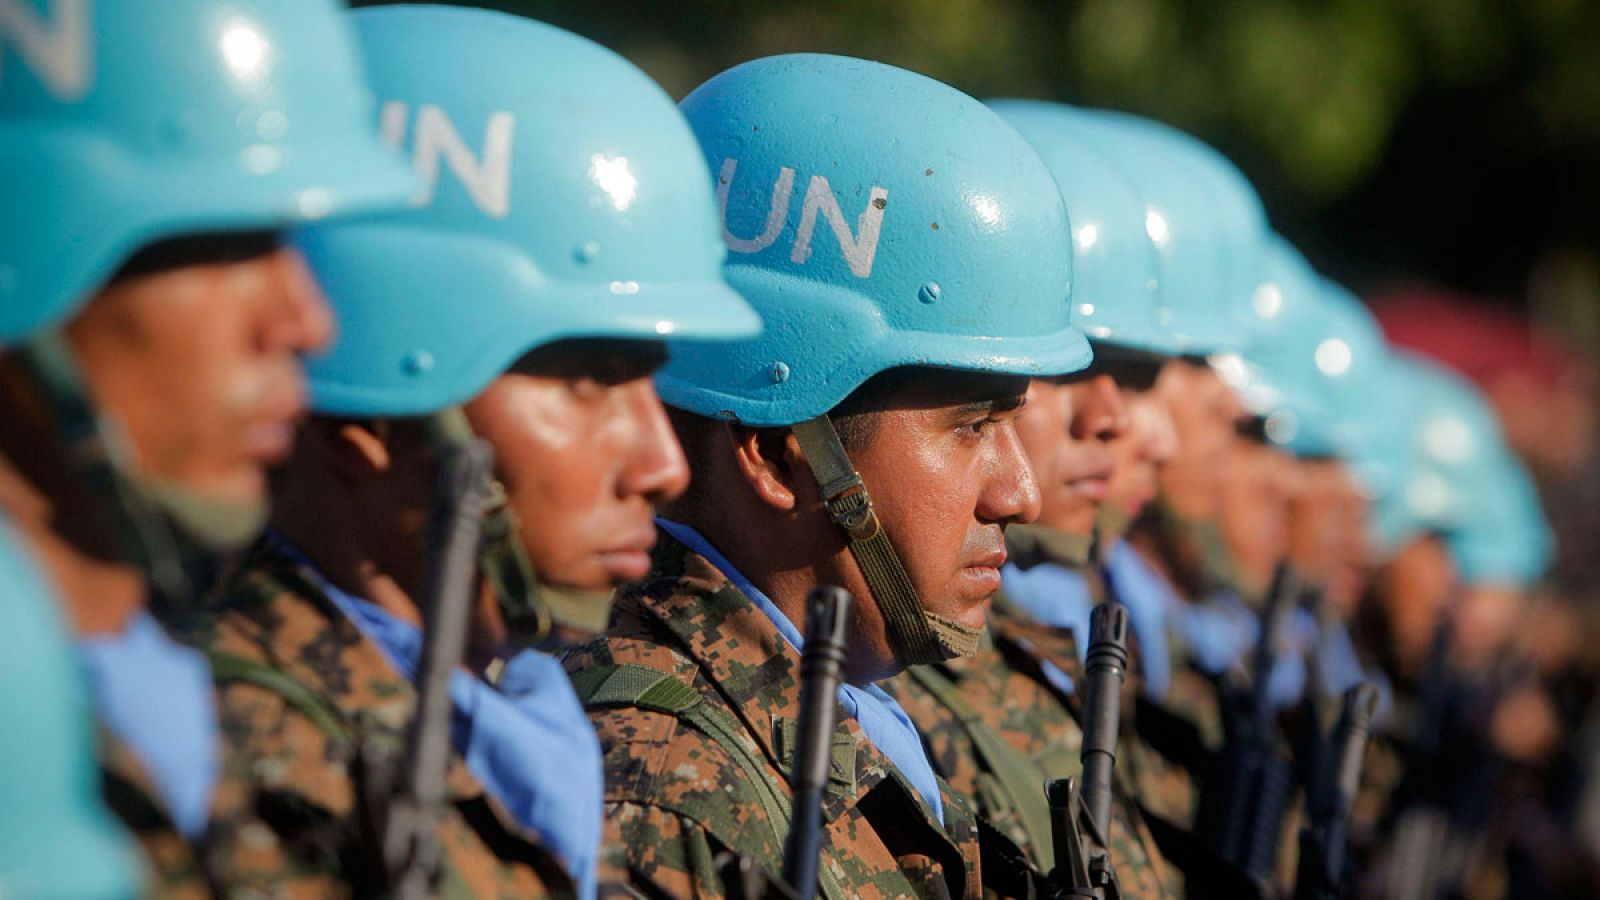   Miembros de las fuerzas de paz de la ONU en El Salvador en una imagen de archivo.